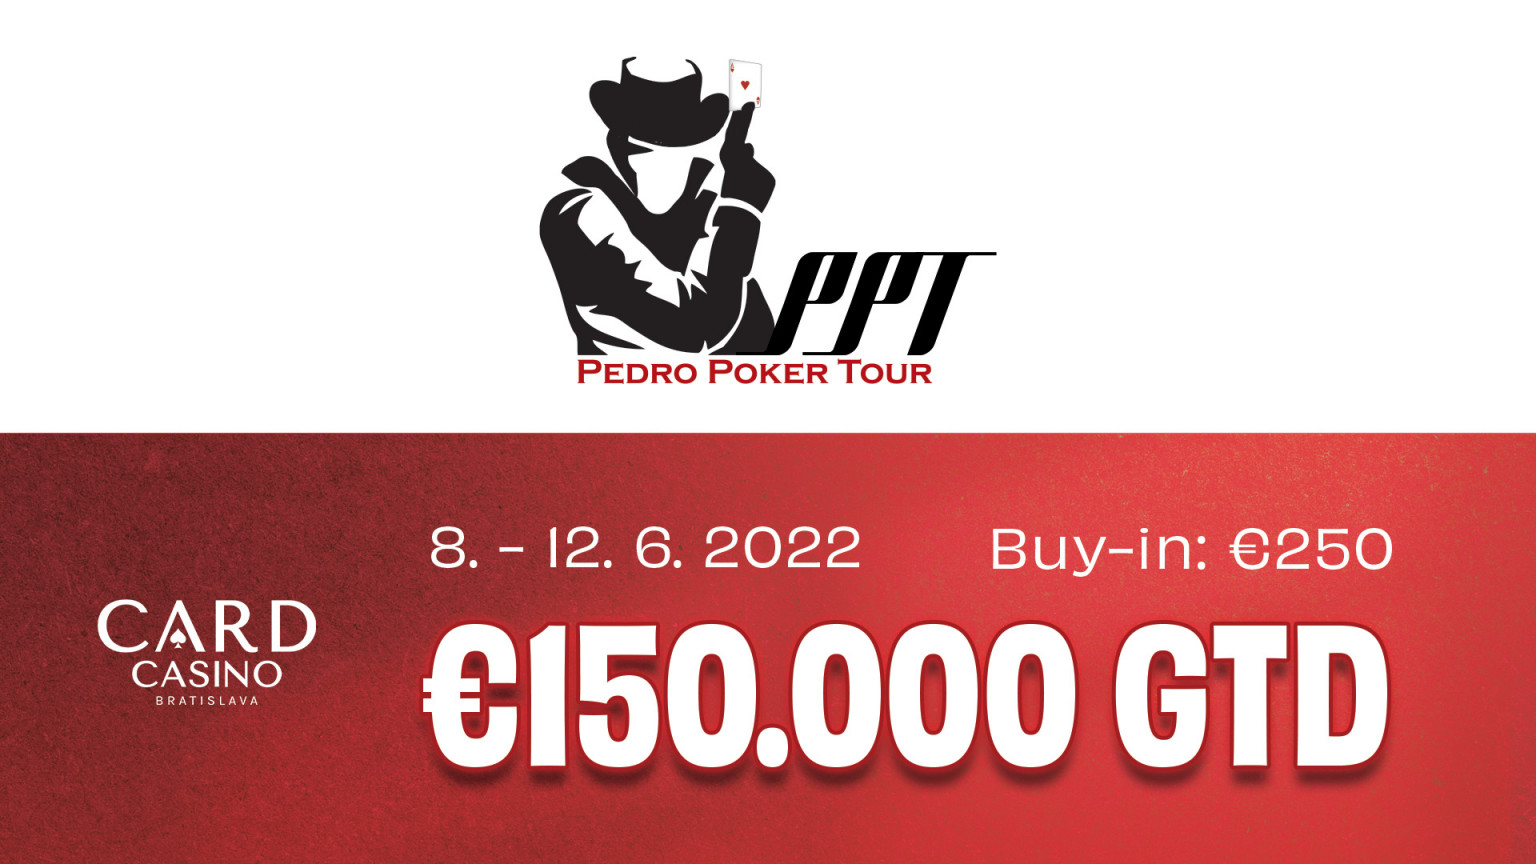 Die Pedro Poker Tour kehrt auf die Bühne zurück. Card Casino bringt sein Main Event mit €150.000 GTD!